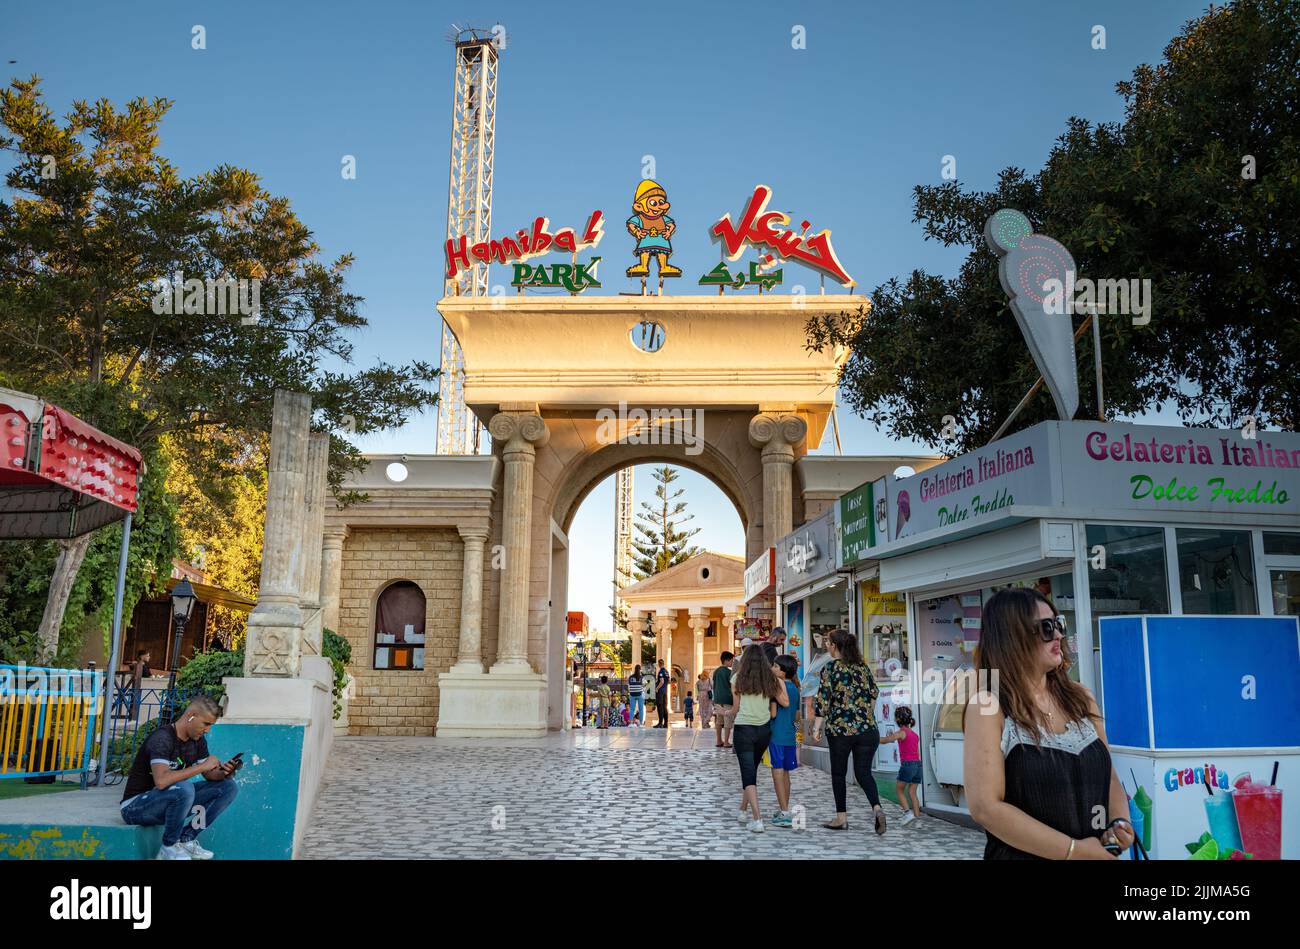 L'entrée principale du parc Hannibal, un parc de loisirs et une foire d'amusement, à Port El Kantaoui en Tunisie. Banque D'Images